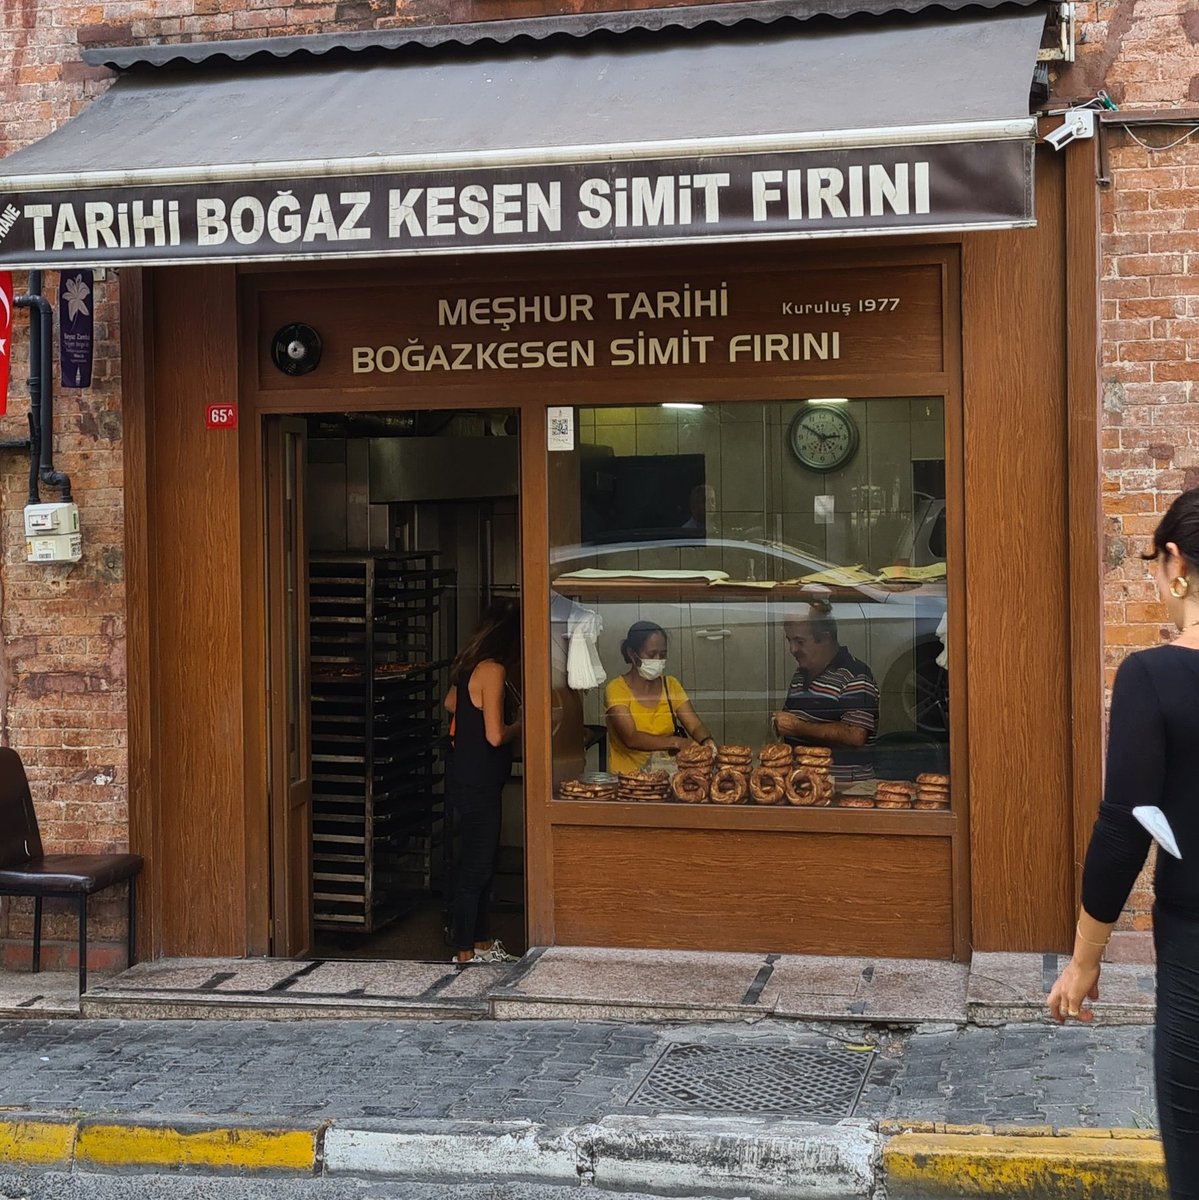 🐃 Hem gitmişken İstanbul'un en iyi simit fırınlarndan Tarihi Boğaz Kesen Simit Fırını'ndan simitle birlikte manda kaymağı ve bal, ve ayrıca manda sütünden yapılmış sütlaç yiyebilirsiniz 😋 (vegan değilseniz)